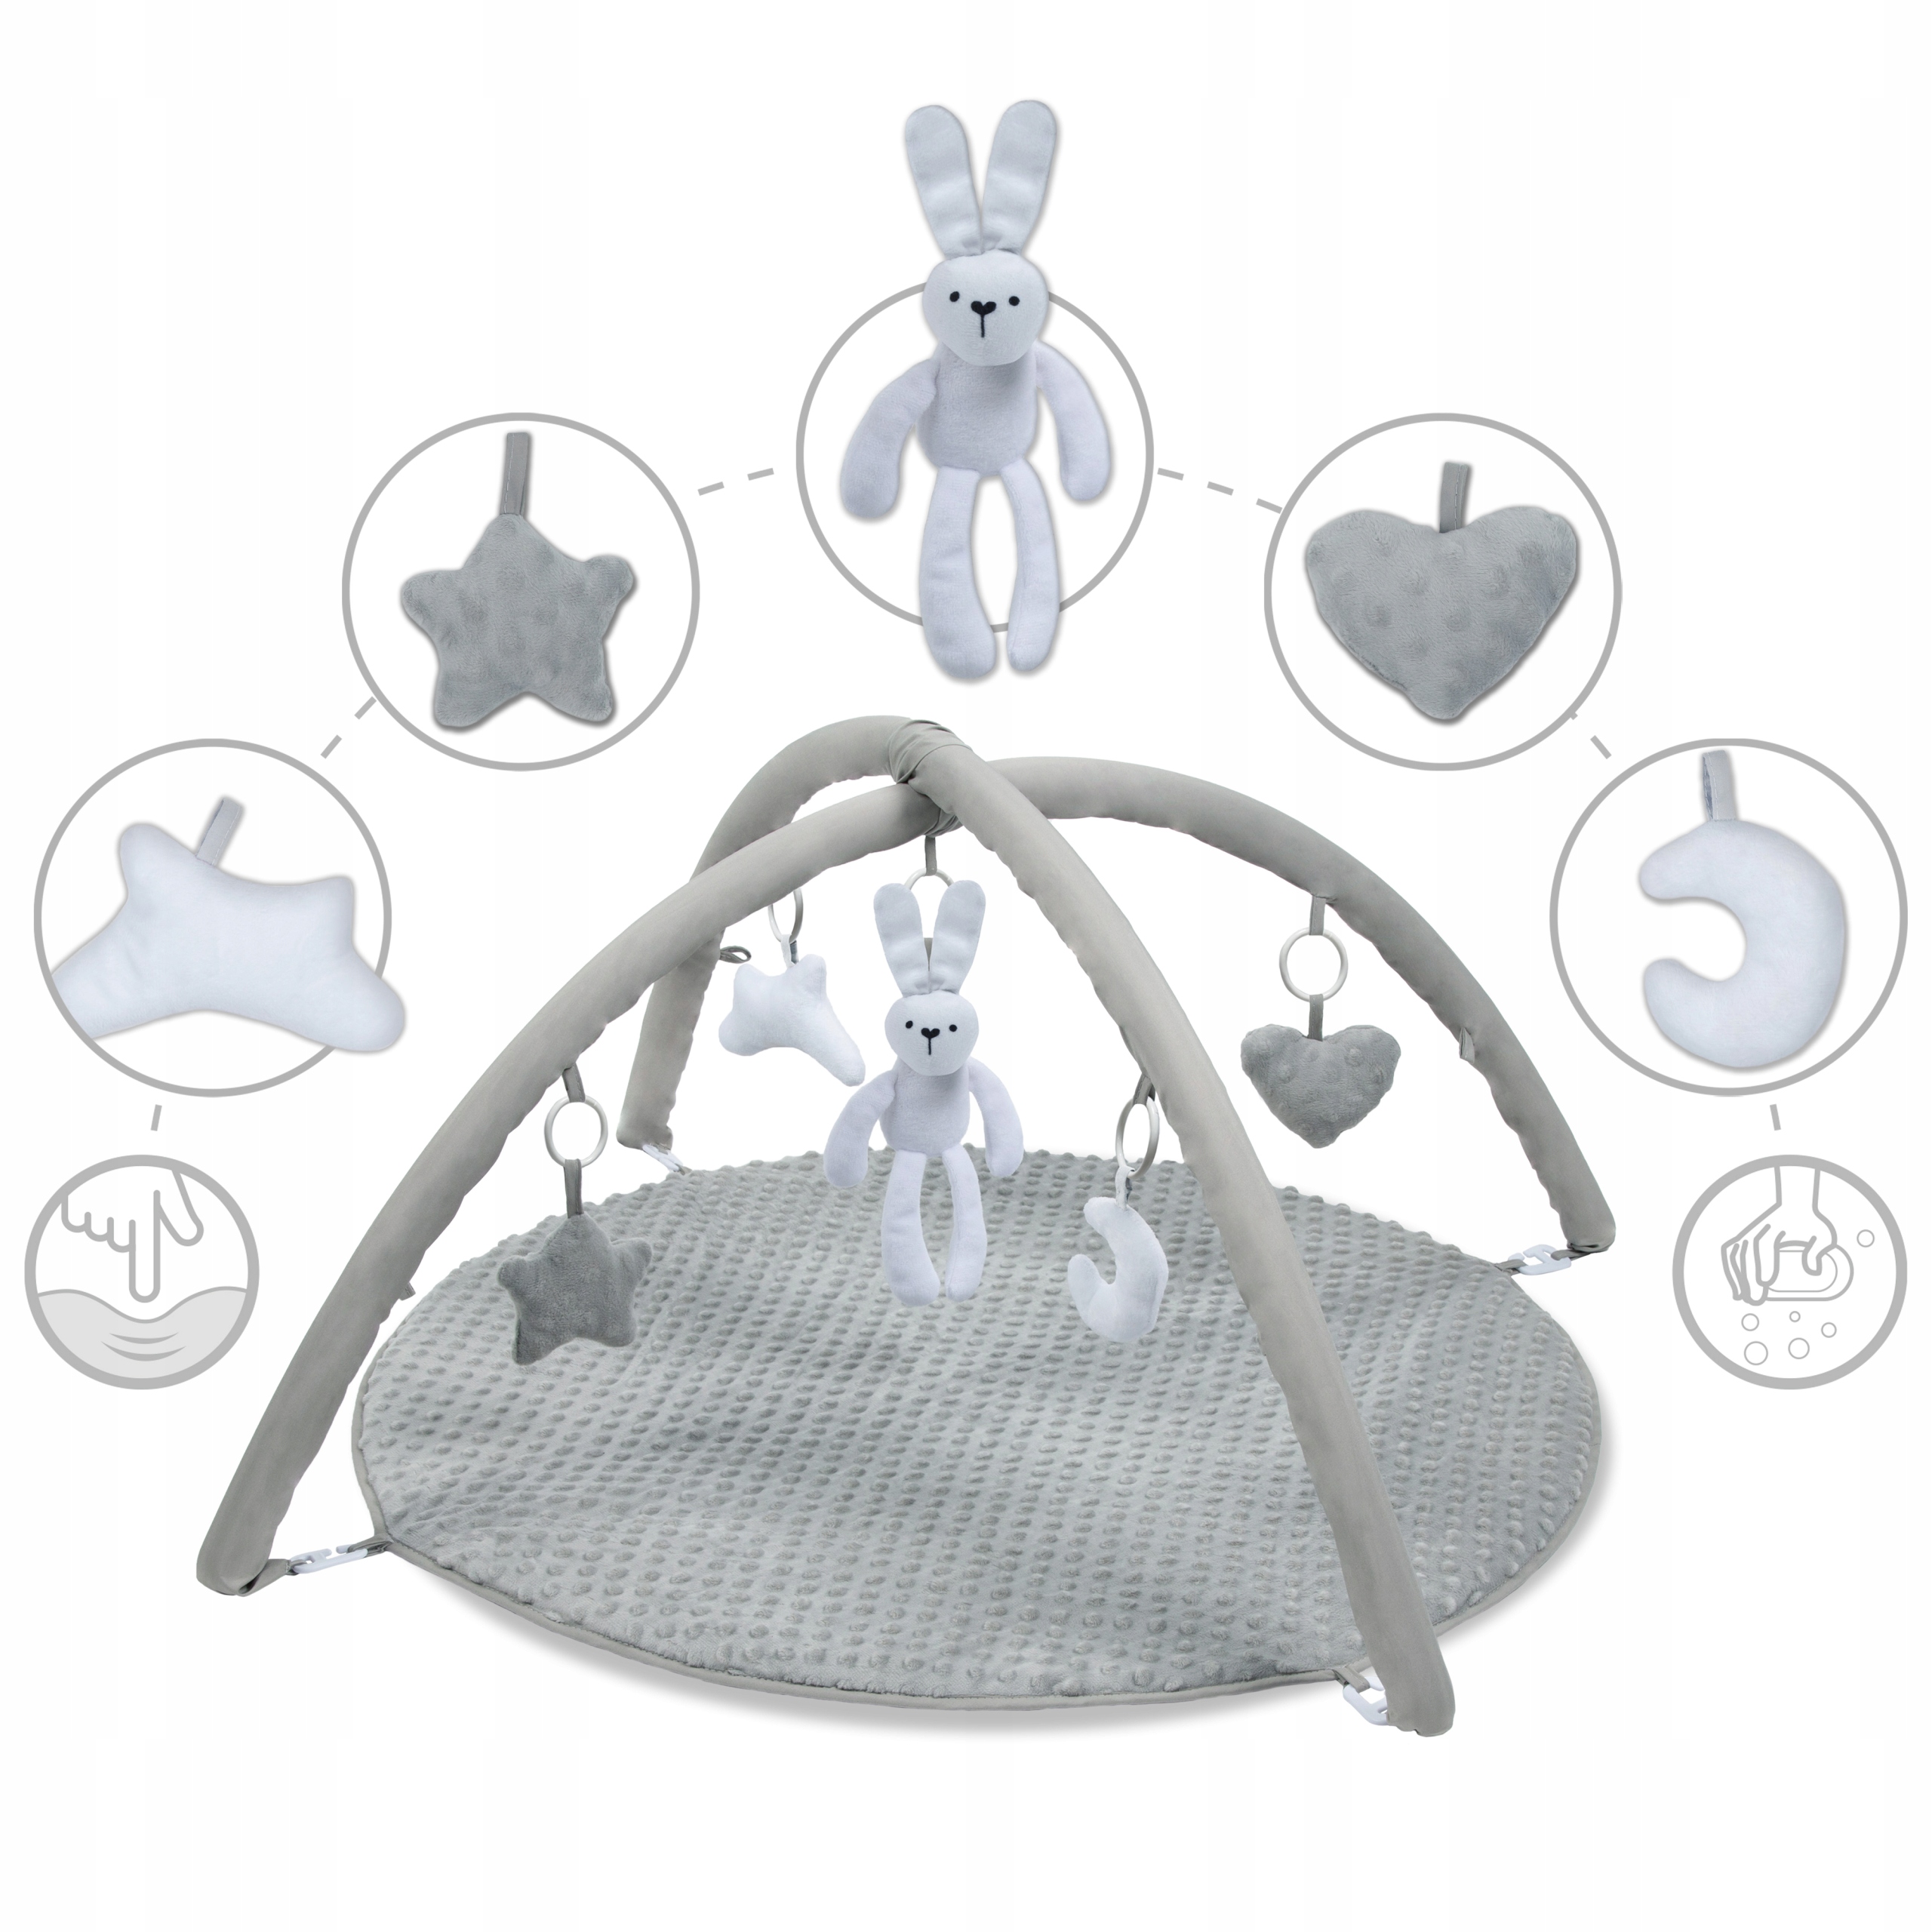 Mata edukacyjna interaktywna Kidwell GRACE Bunny Wiek dziecka 0 +